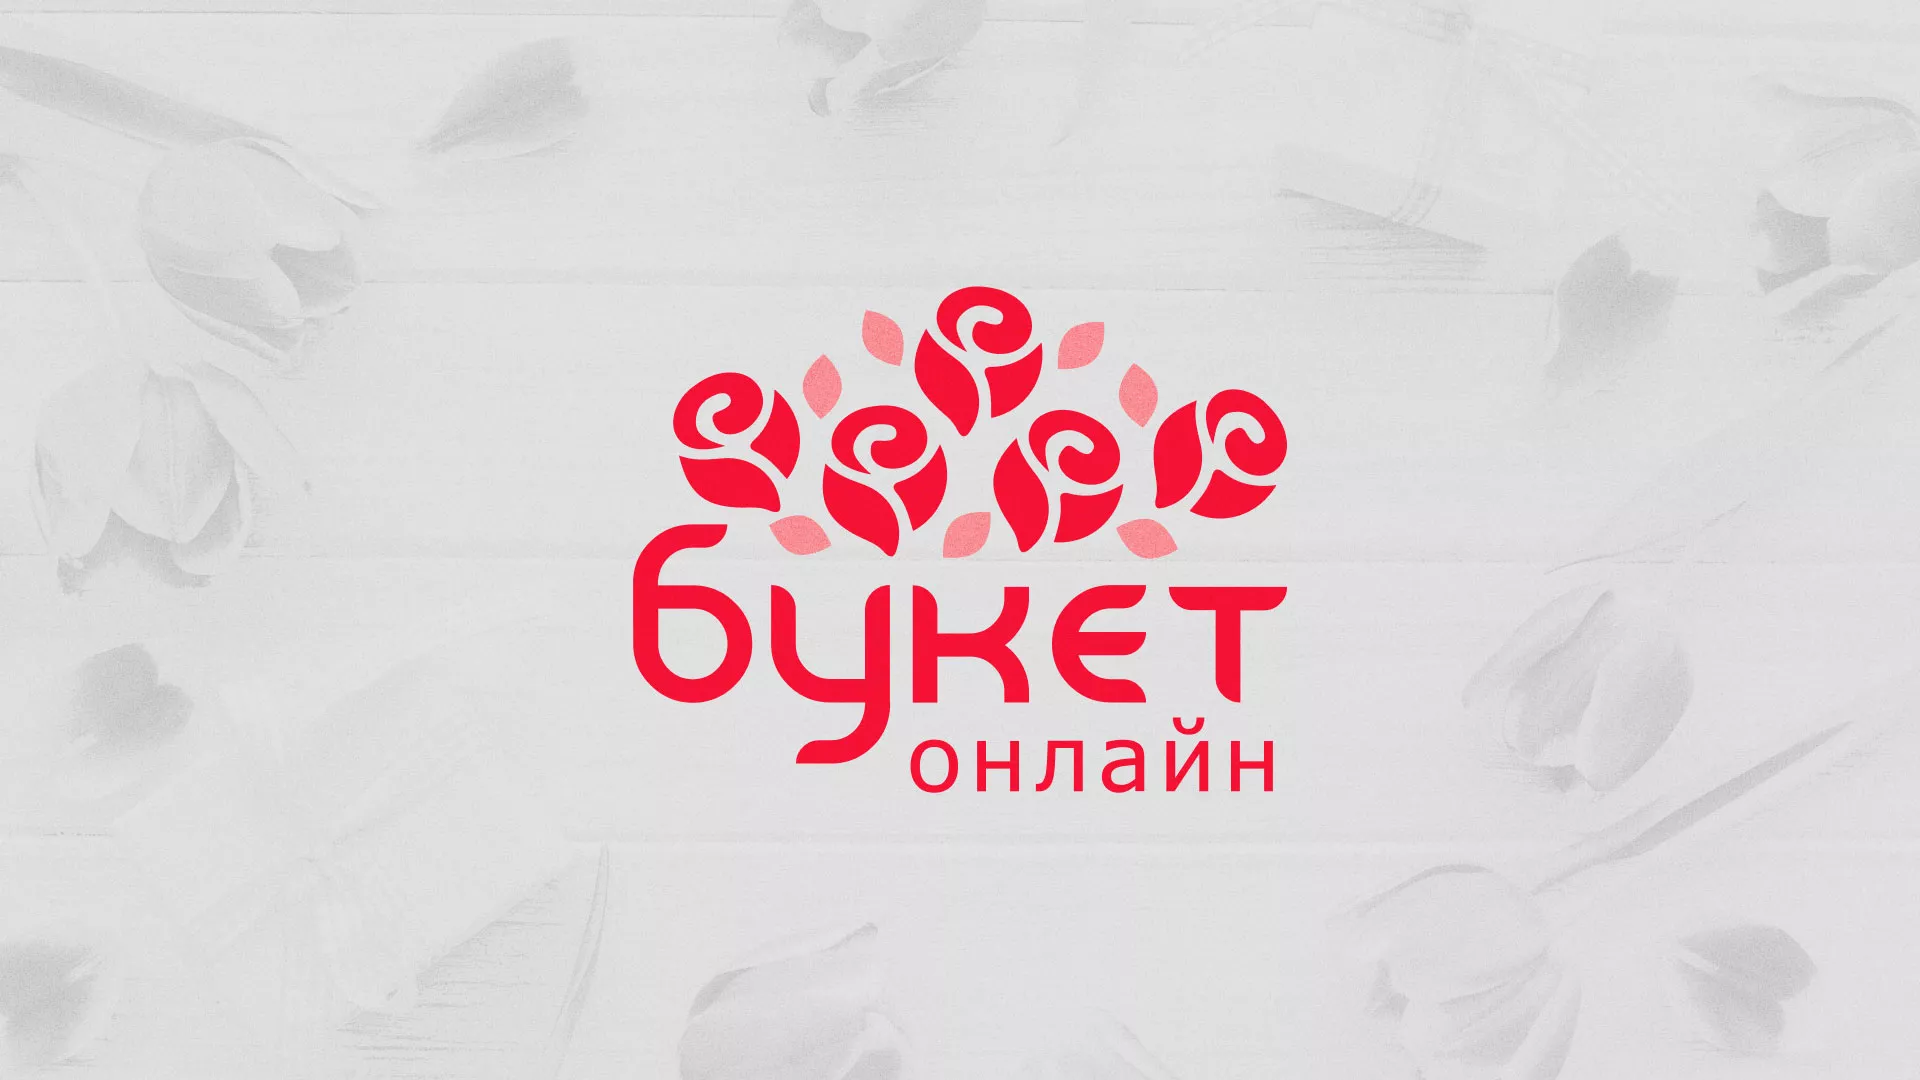 Создание интернет-магазина «Букет-онлайн» по цветам в Сосновоборске